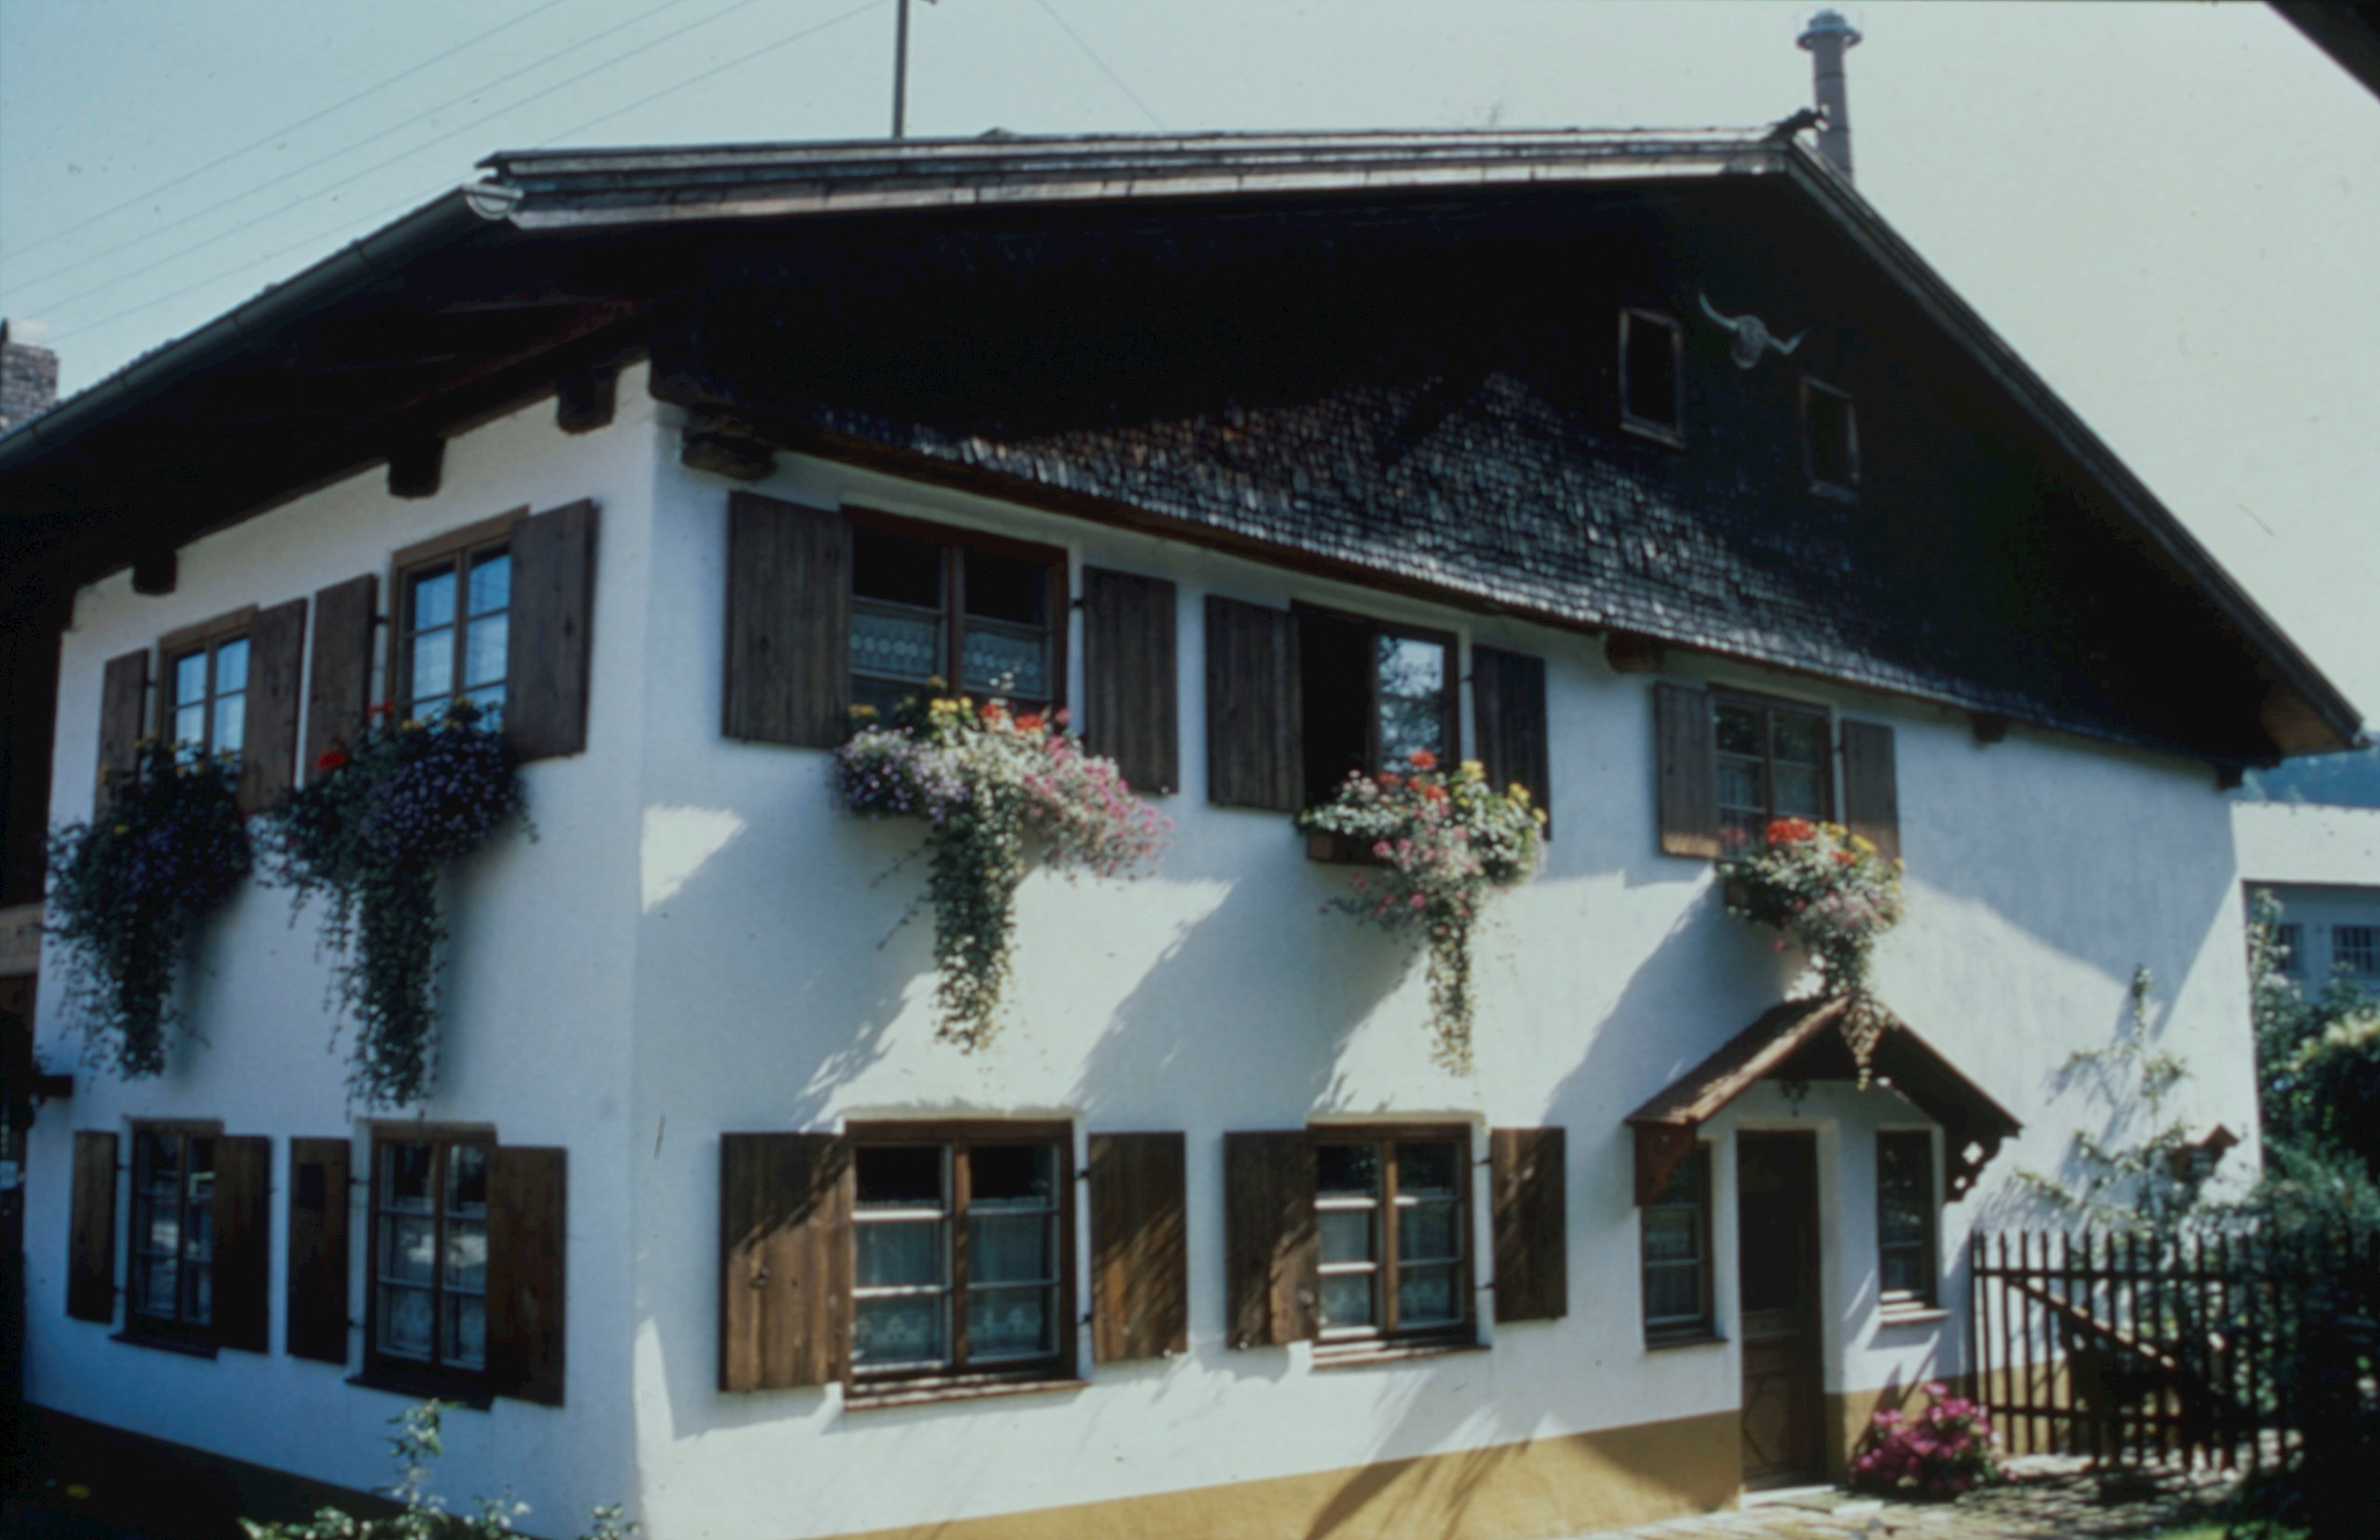 Kleinbauernhaus in Ronsberg, Ende des 17. Jhs. Aufnahme: Ca. 1980er/1990er Jahre.